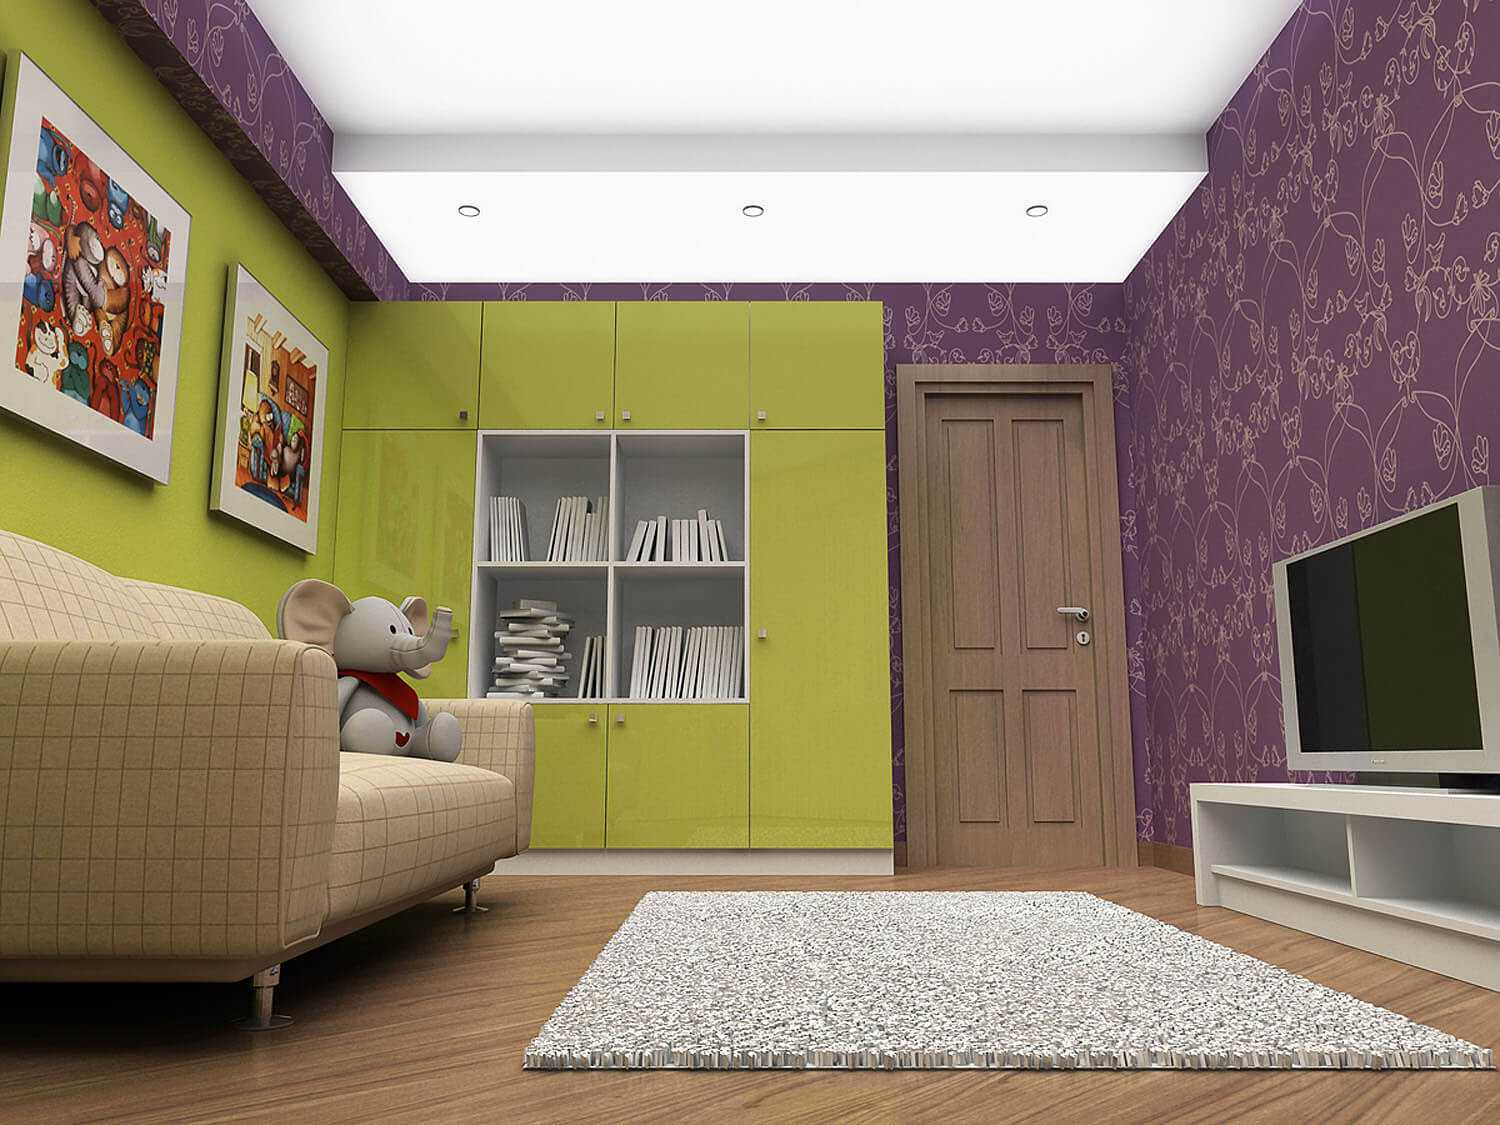 combinazione di colori chiari all'interno della camera da letto